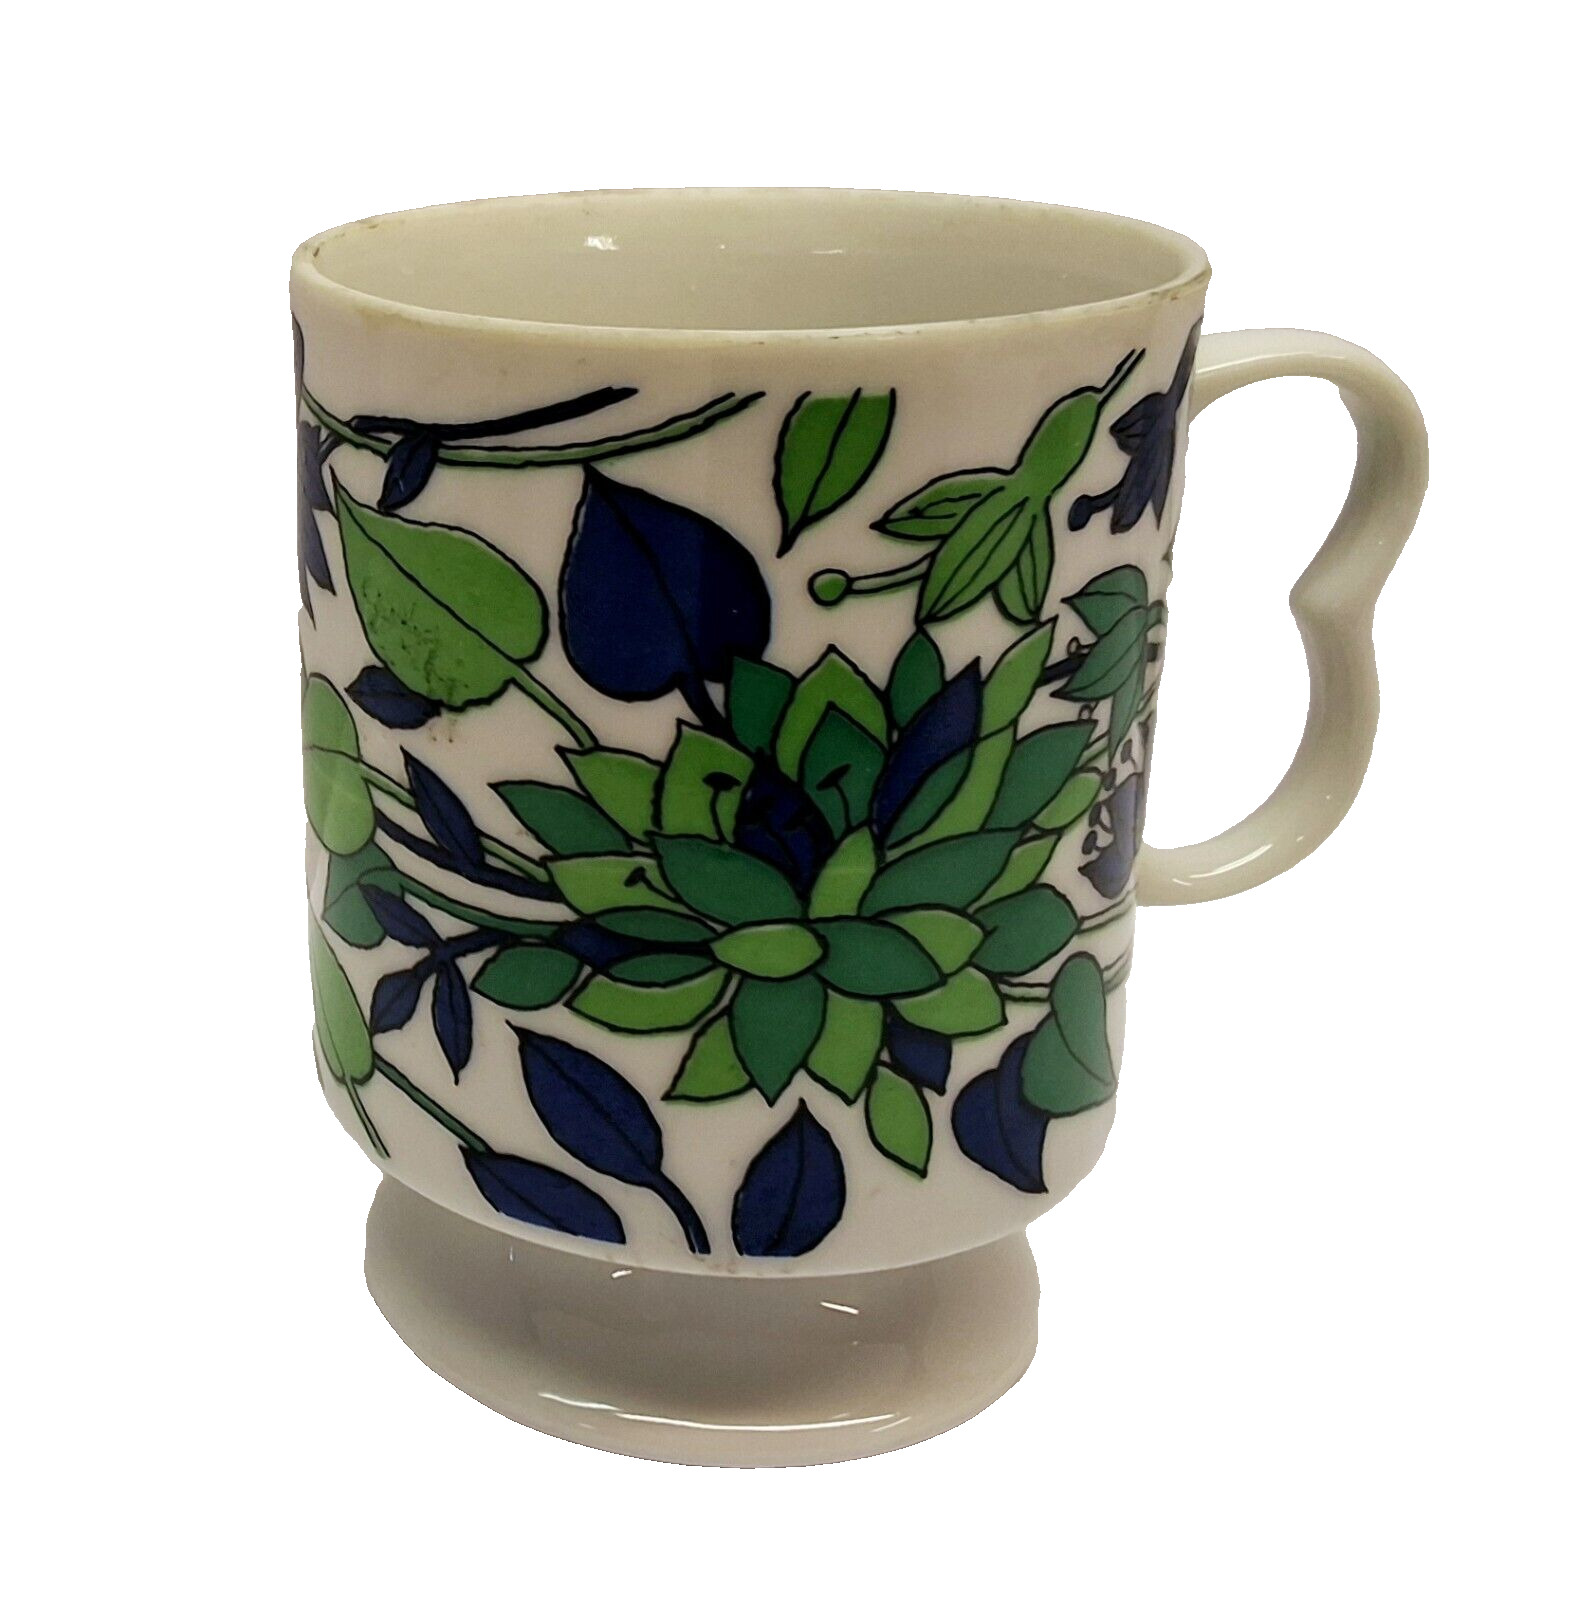 Vintage 1960s Japanese Blue & Green Flower Motif Mod Style Pedestal Teacup Mug